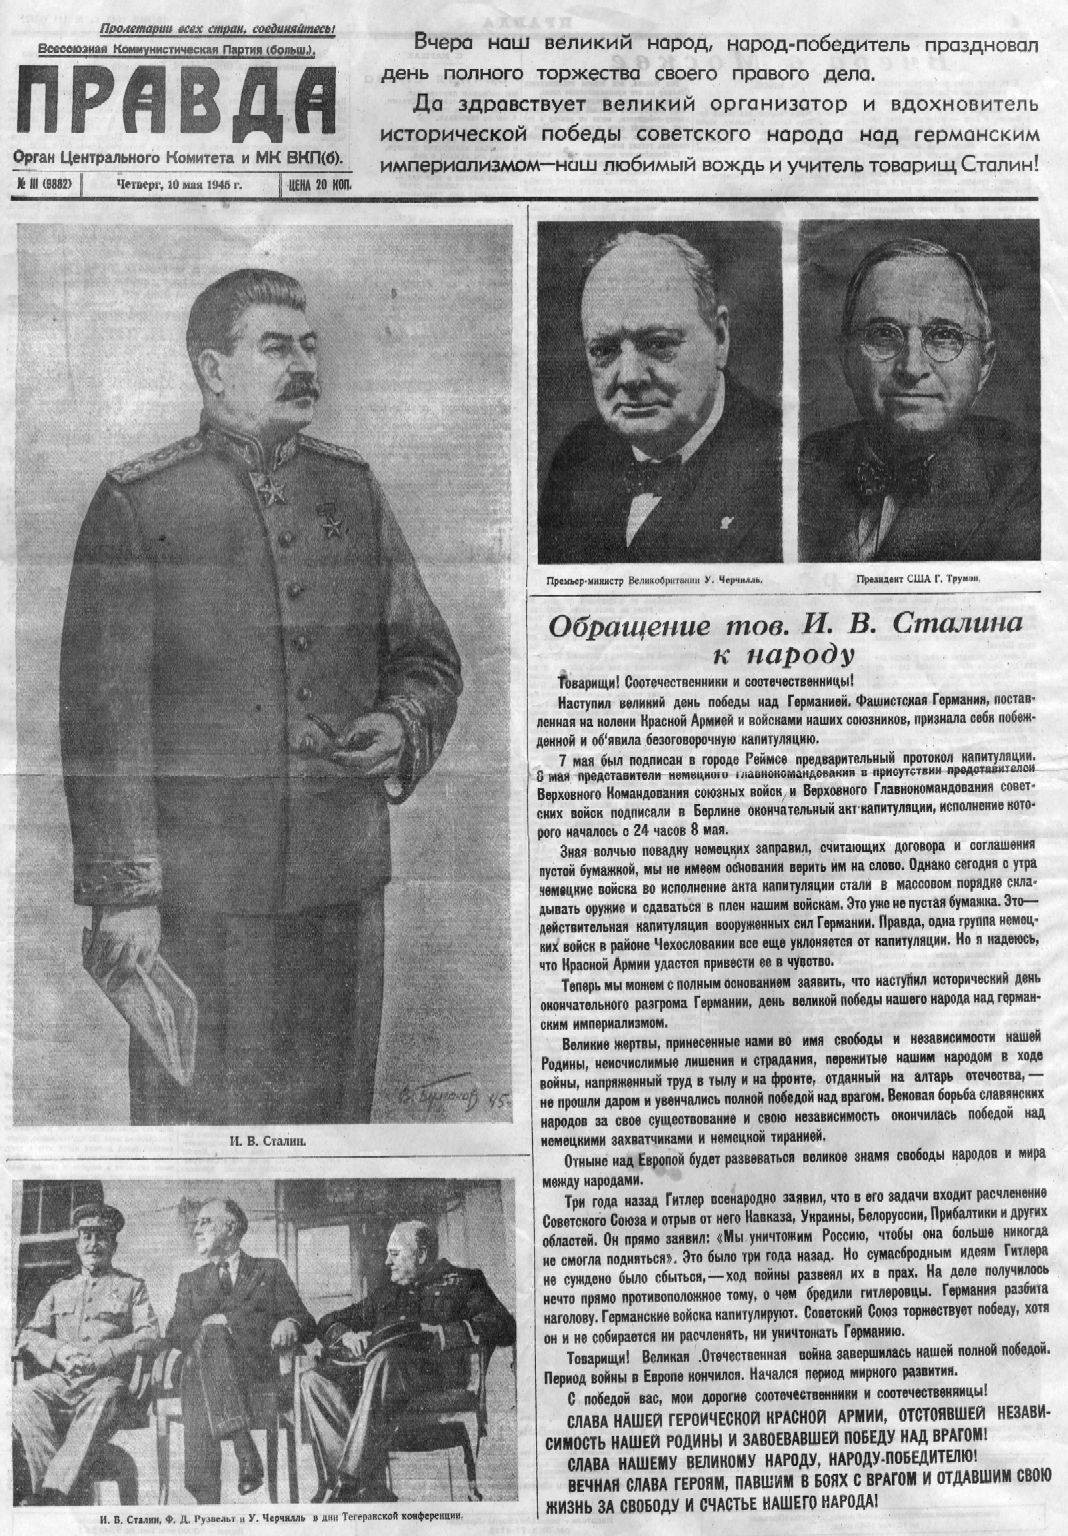 Победа советского народа над фашистской Германией. Газета "Правда" от 10 мая 1945 года.